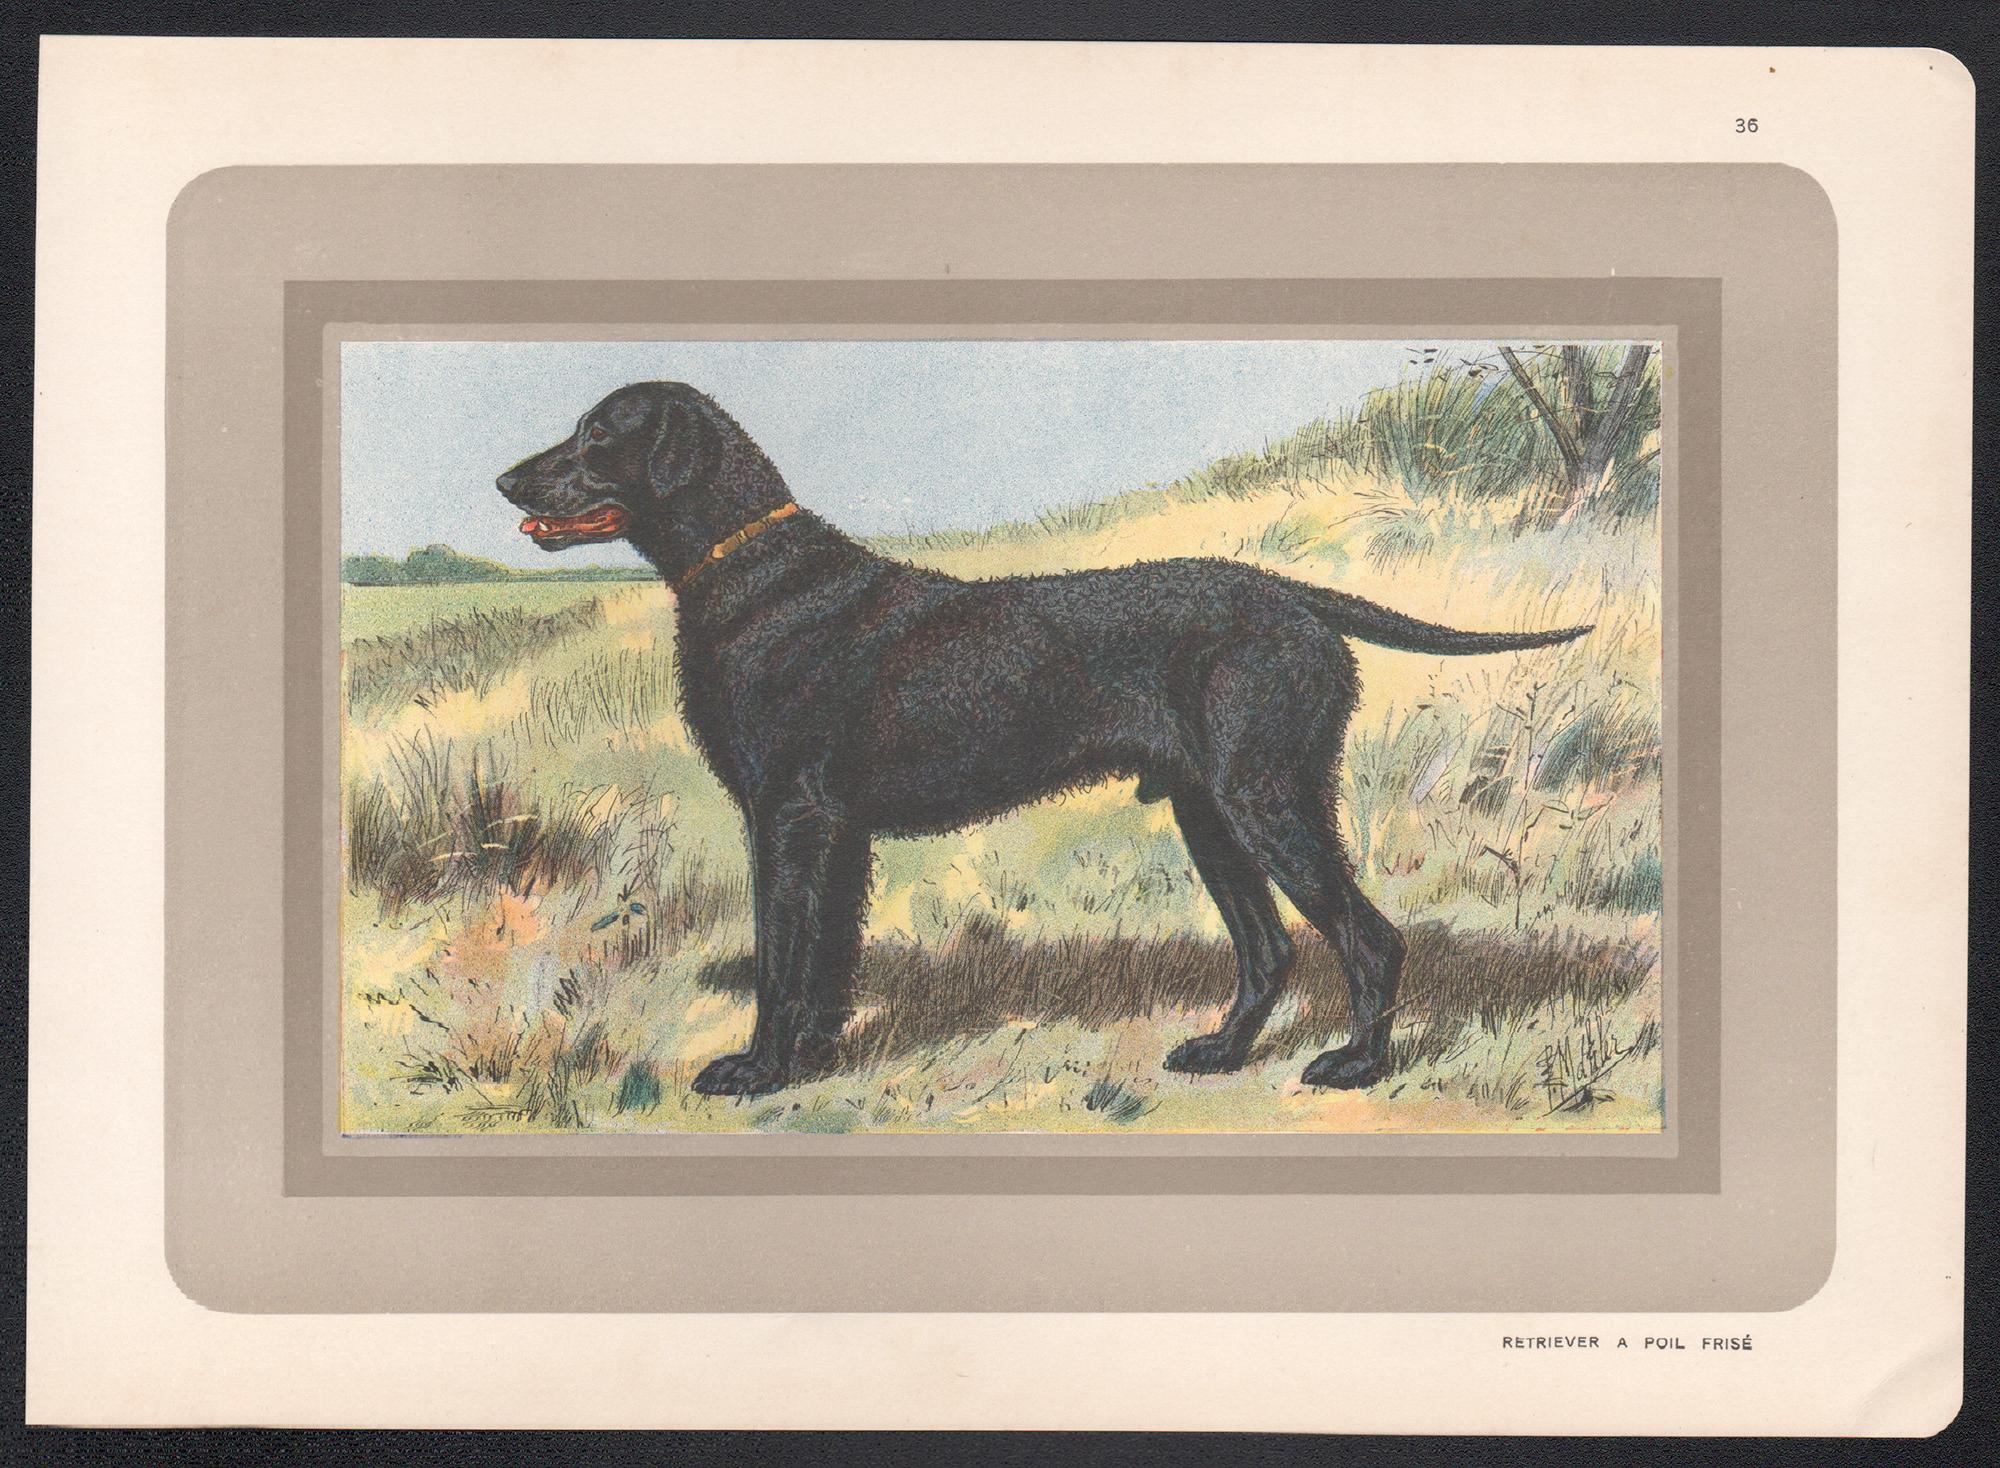 Retriever Curly Coated, impression chromolithographie de chien de chasse français, années 1930 - Print de P. Mahler